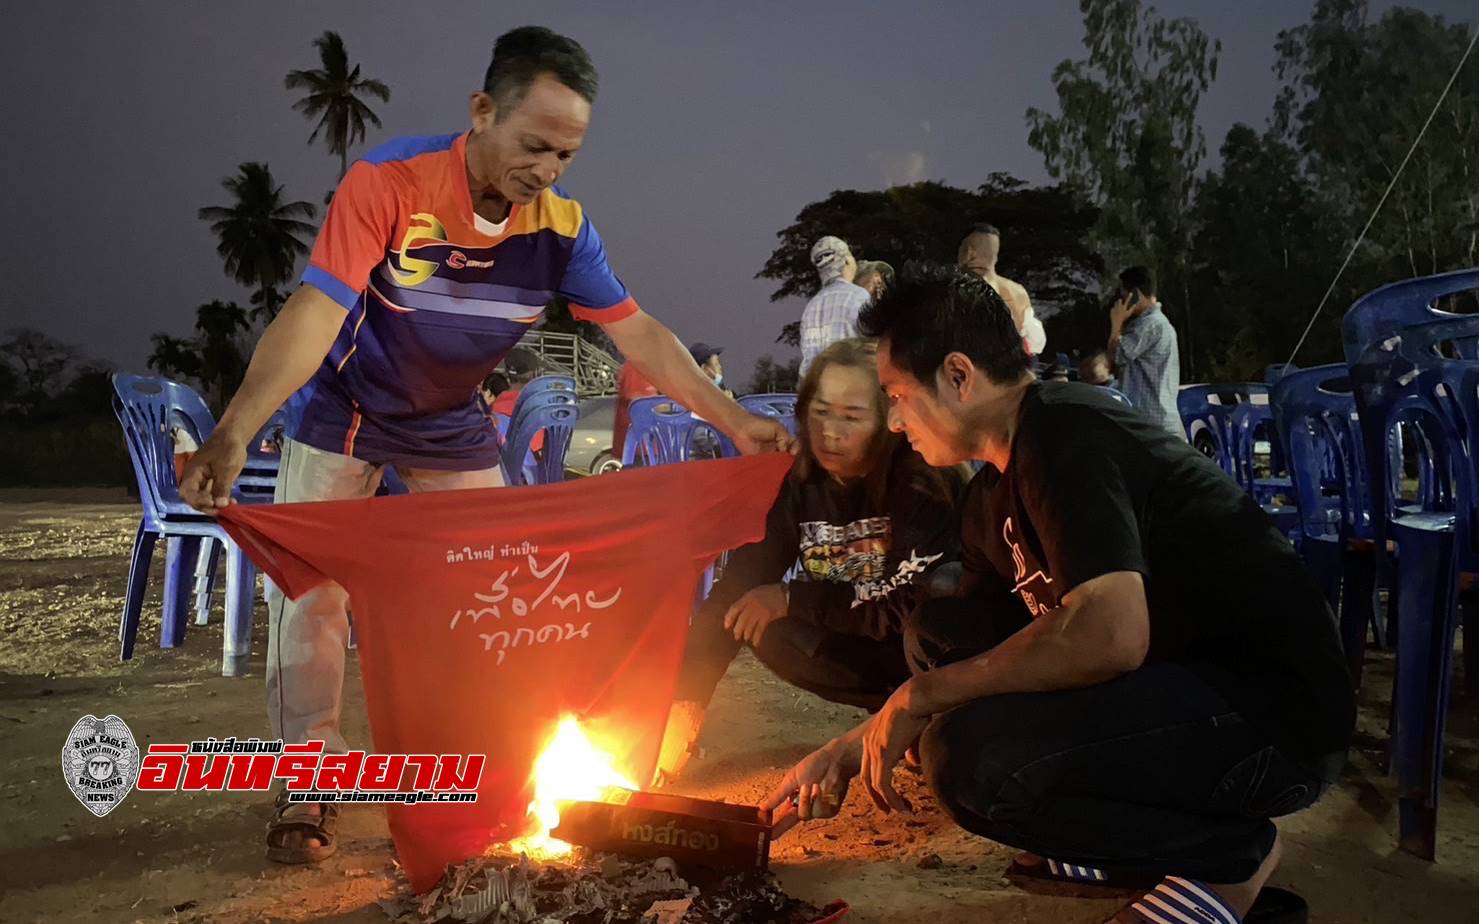 จันทบุรี-กลุ่มคนเสื้อแดงเขต 3 รวมตัวกัน ประกาศเจตนารมณ์ เผาเสื้อแดงแสดงสัญลักษณ์ ไม่เอาผู้สมัครคนใหม่ ไม่เอาพรรคเพื่อไทย